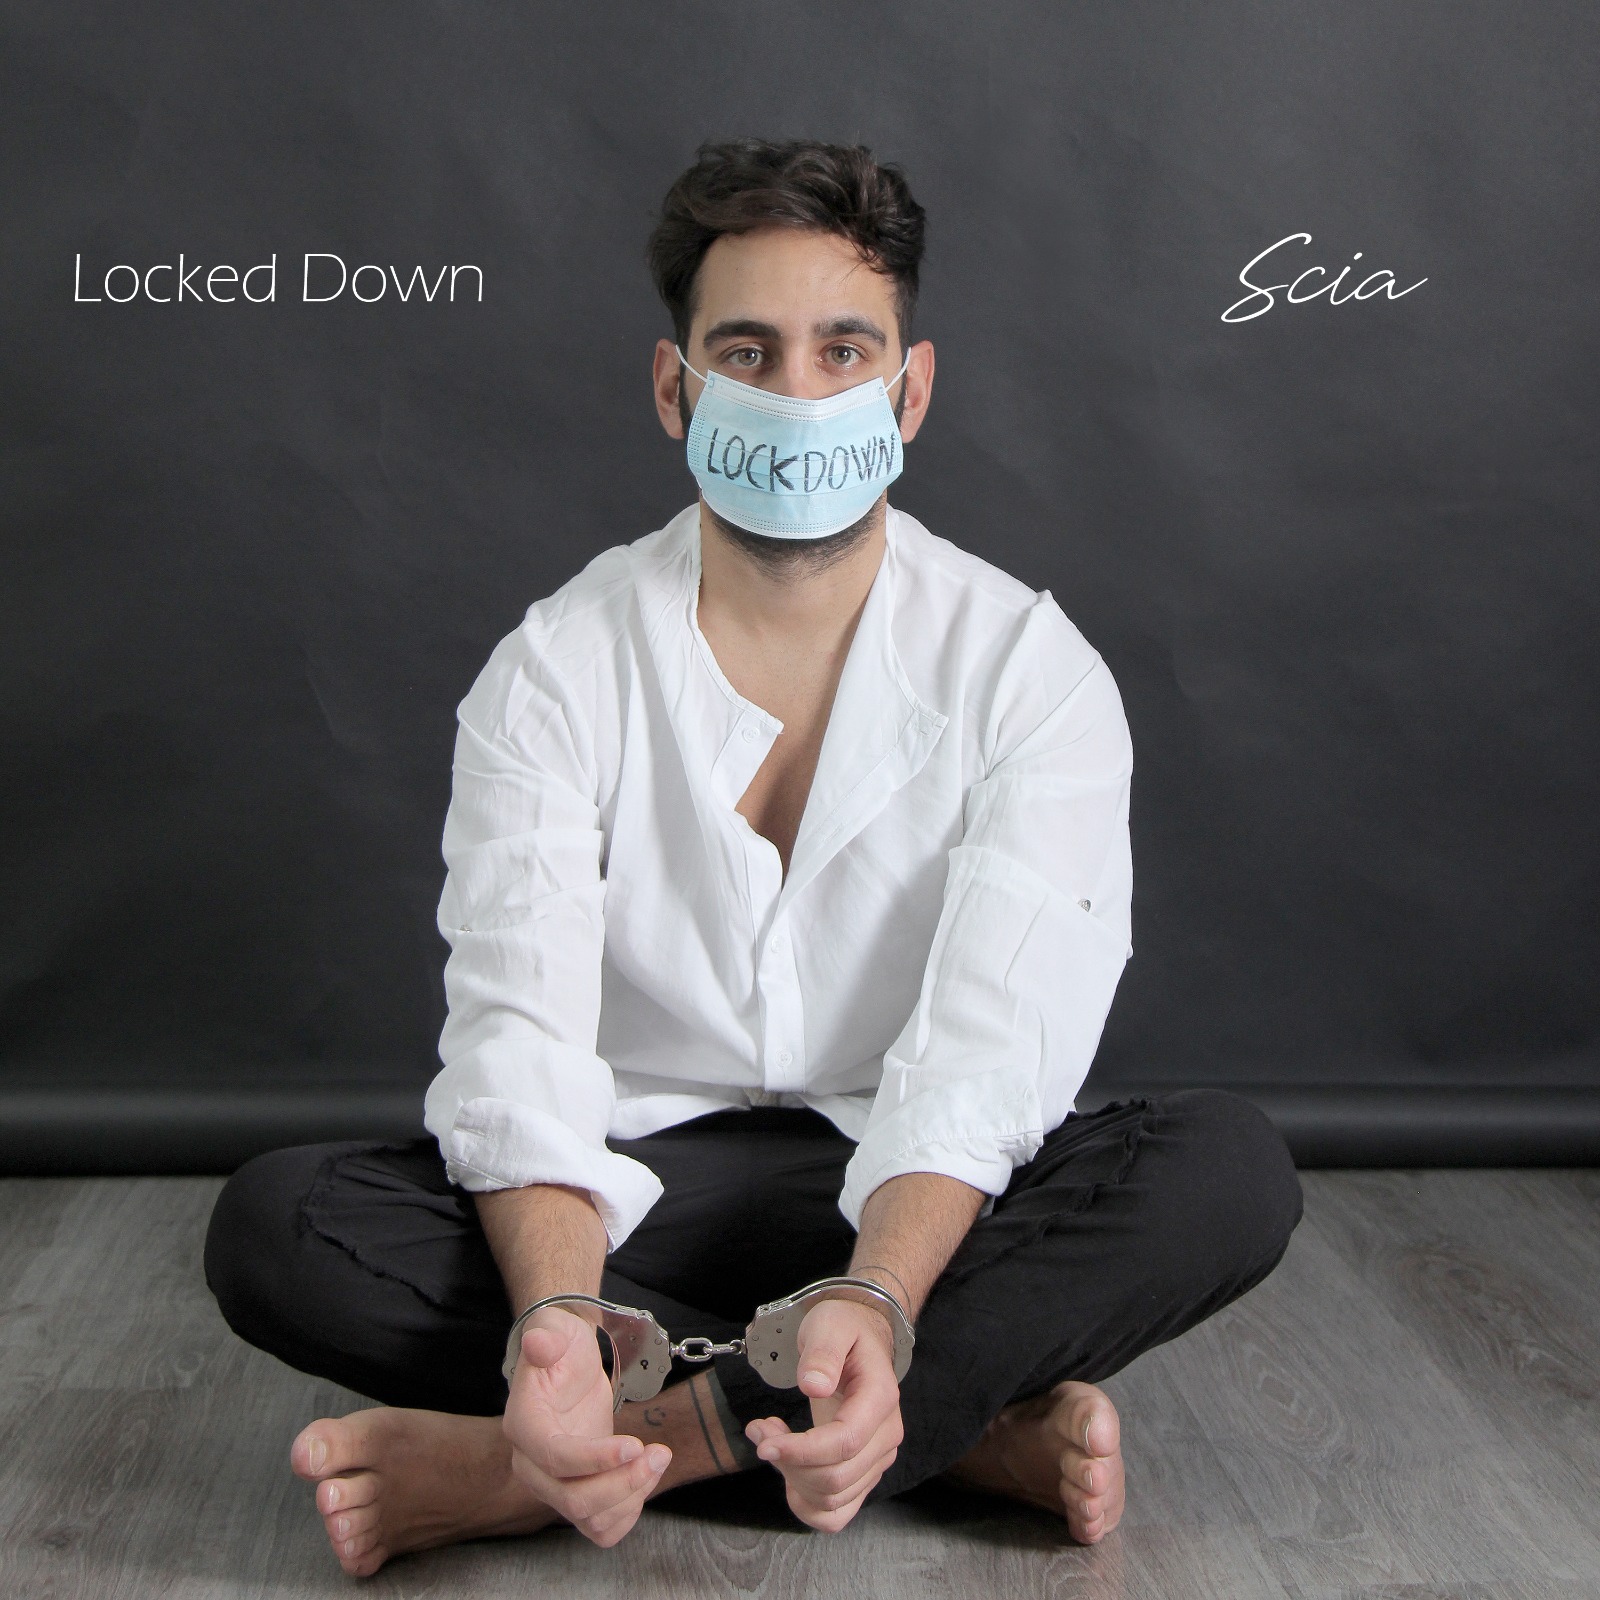 Locked down", il nuovo singolo di Scia - Agro Today